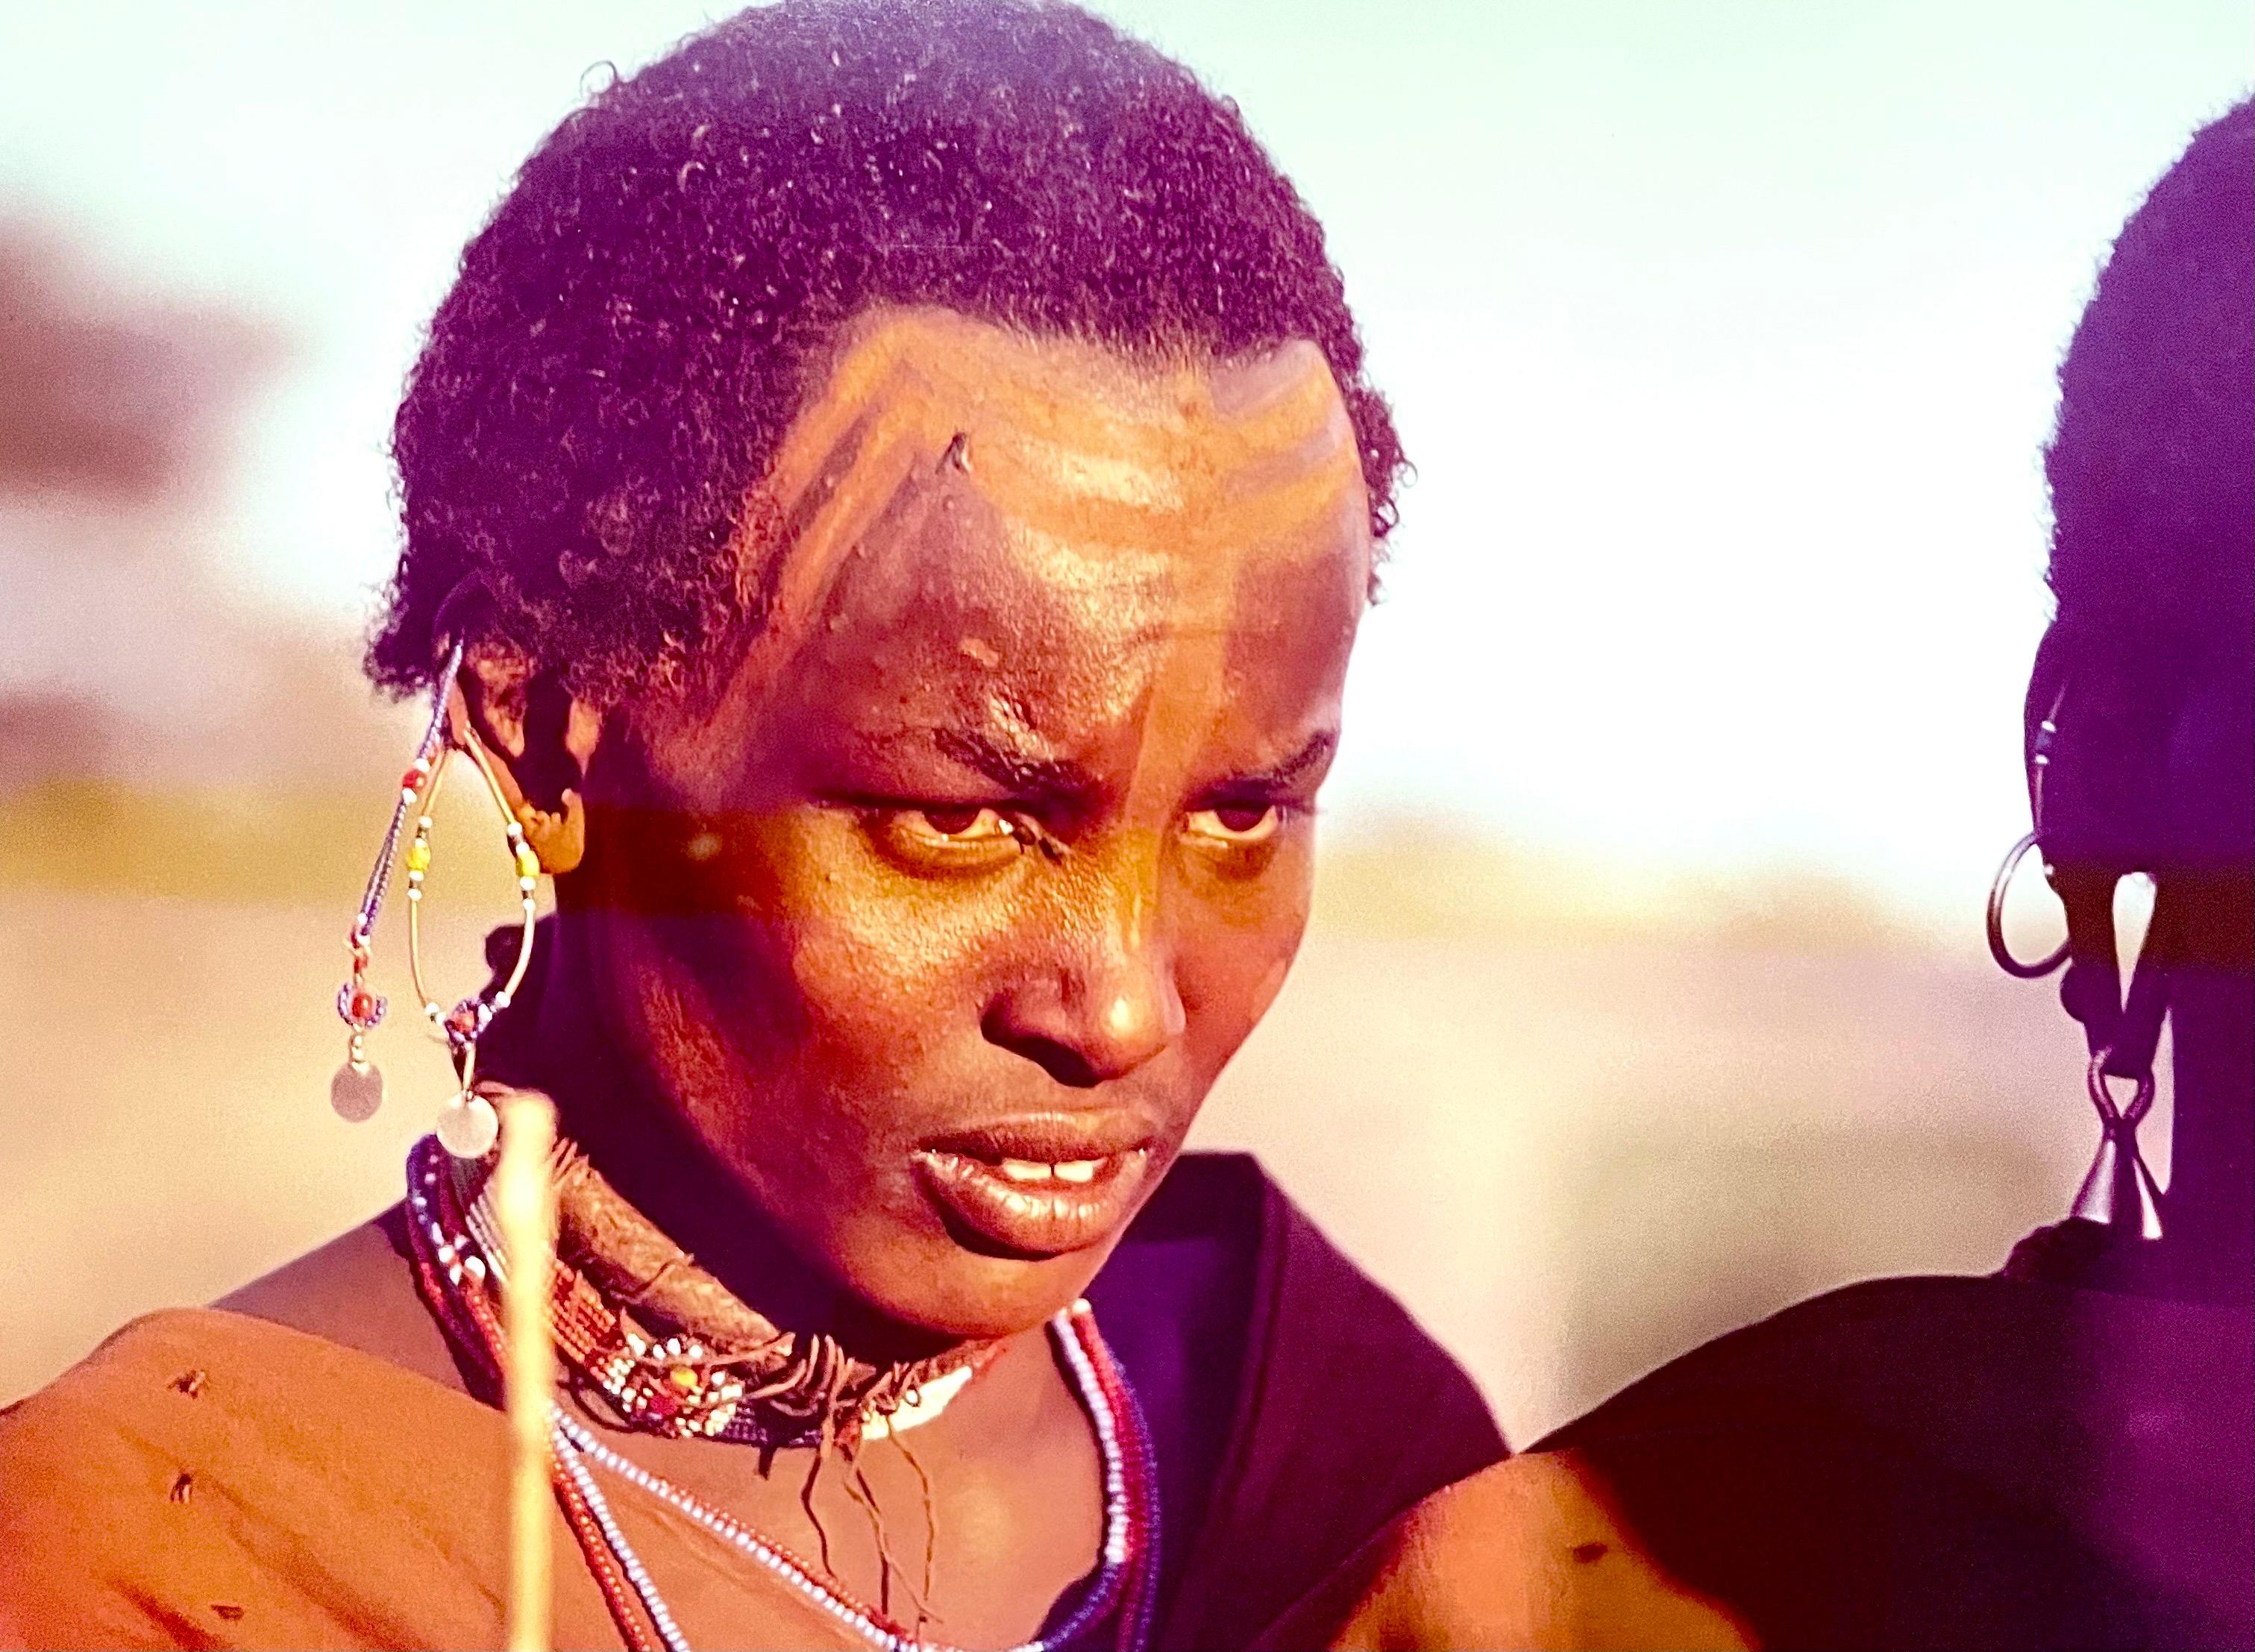 Seltene Vintage-Farb-C-Druck-Fotografie, afrikanischer Maasai-Krieger, Chromogenes Foto  – Photograph von Carol Beckwith